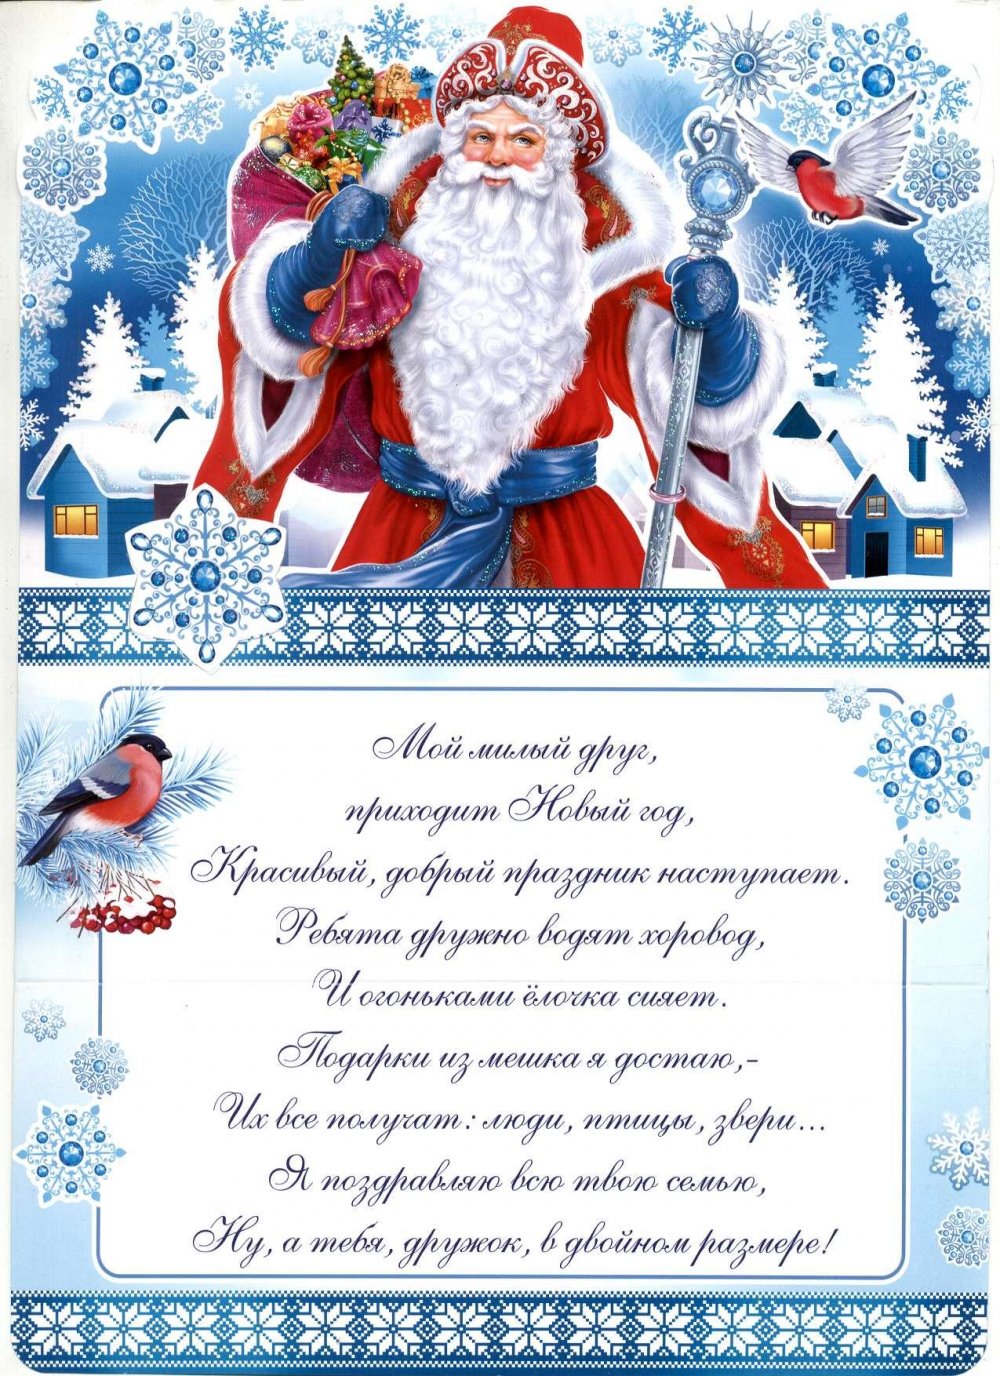 Телеграмма от Деда Мороза